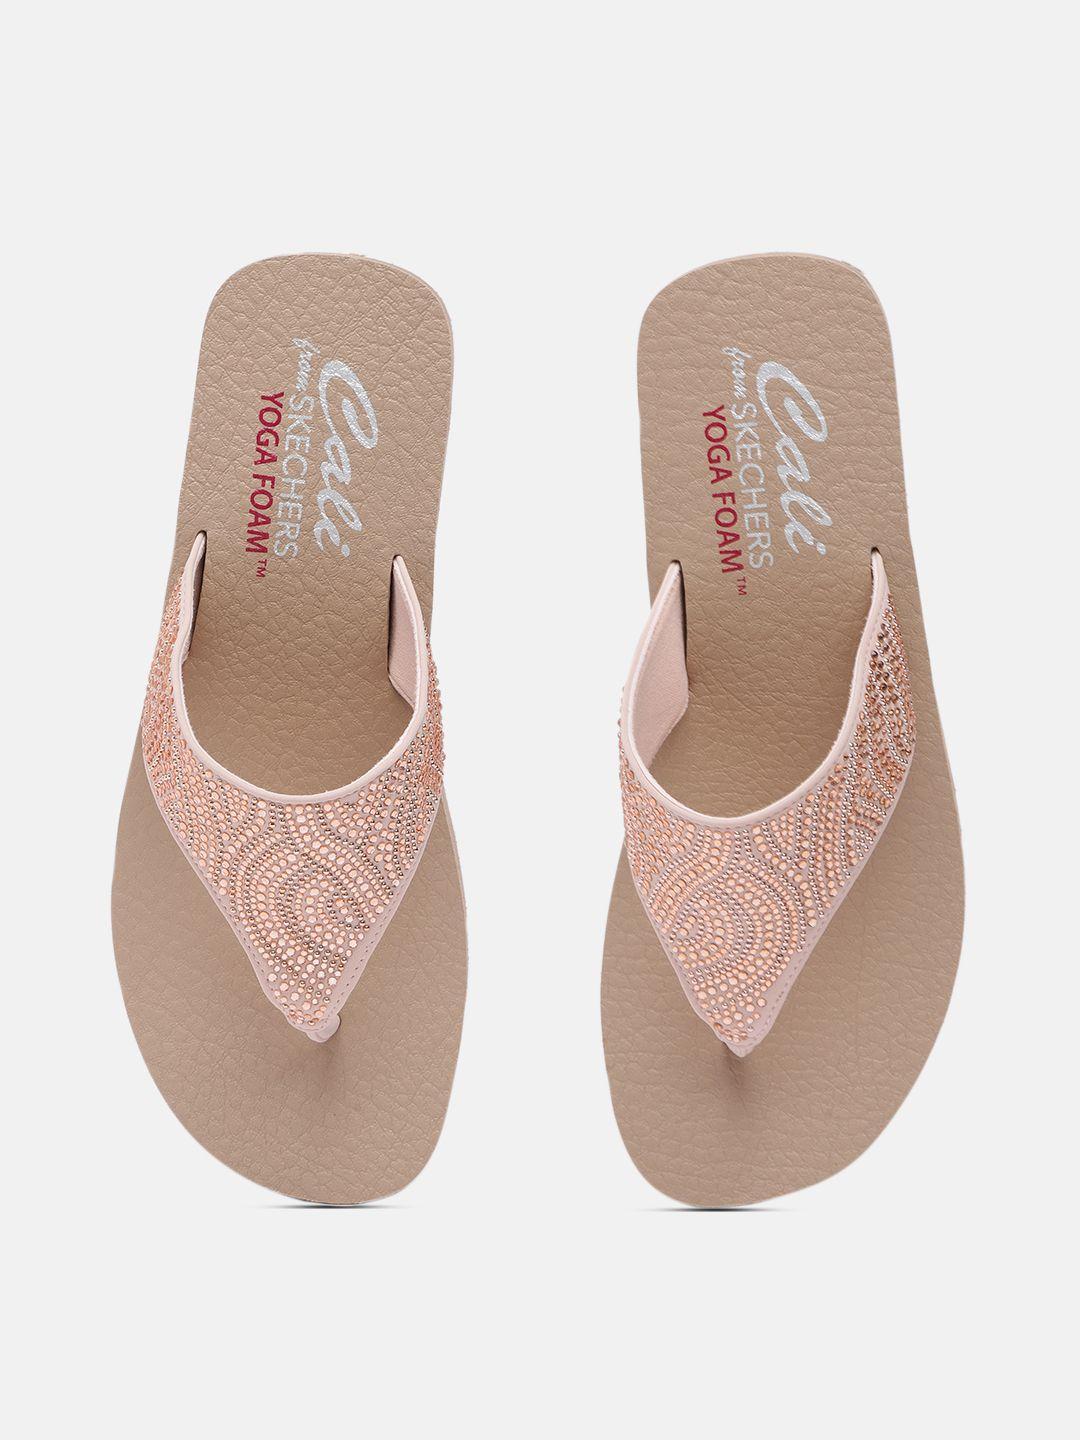 skechers-nude-pink-embellished-vinyasa-stone-candy-platform-sandals